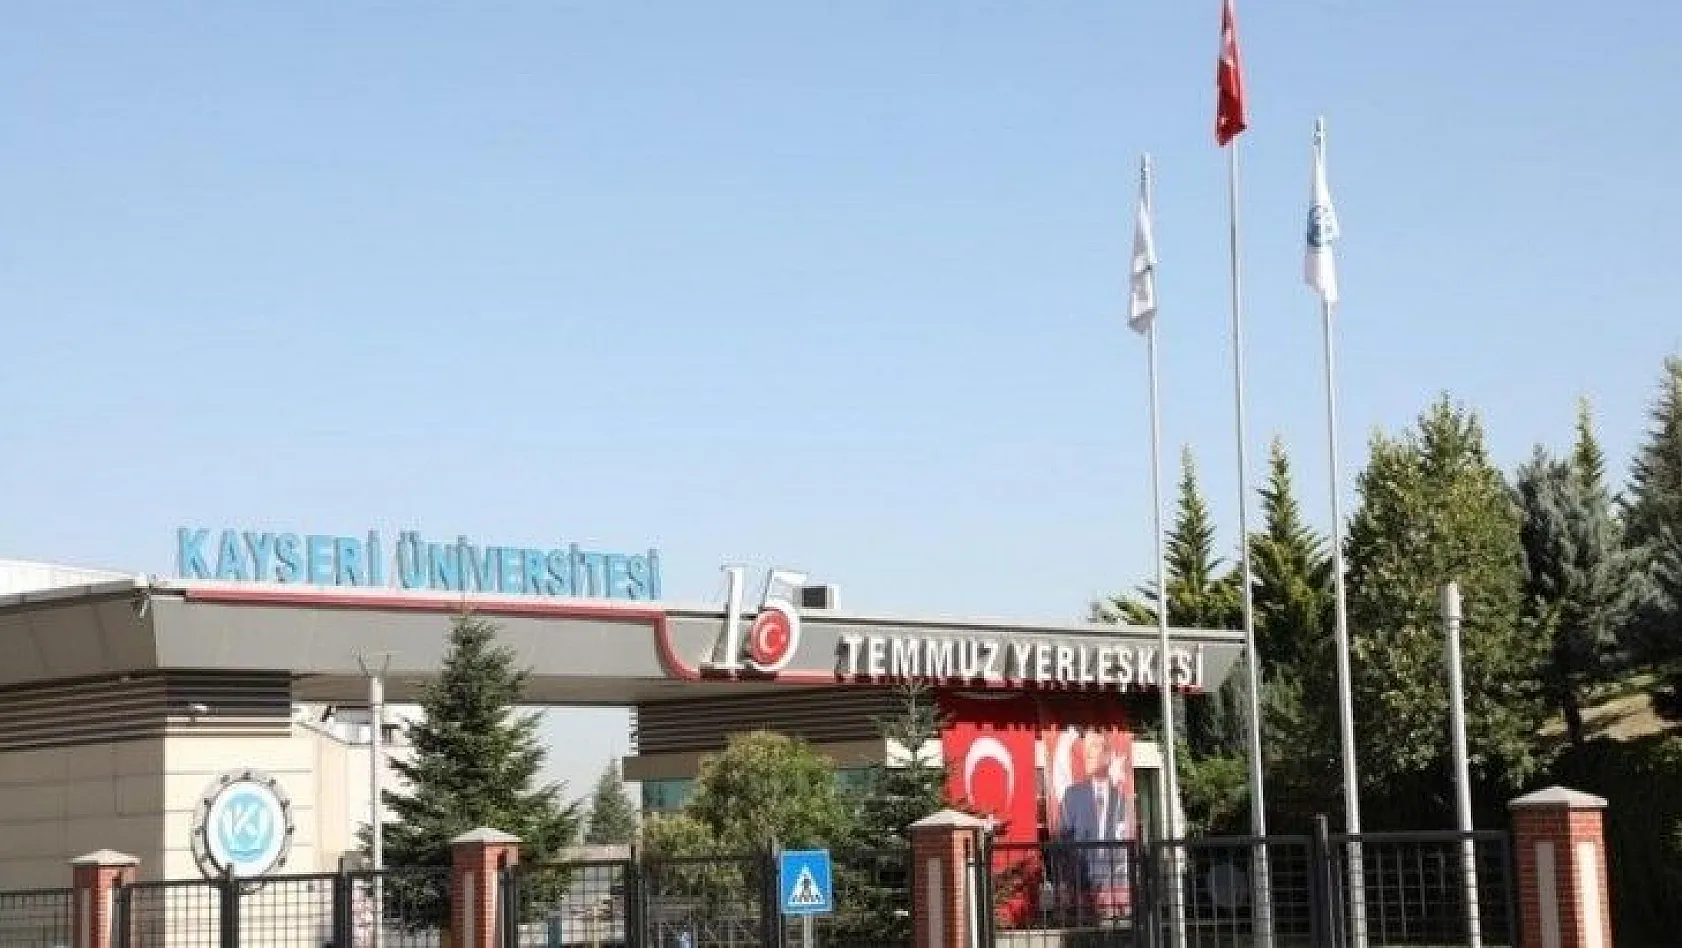 Kayseri Üniversitesi Kütüphanesine Milli Şairimiz Mehmet Akif Ersoy'un İsmi Verildi